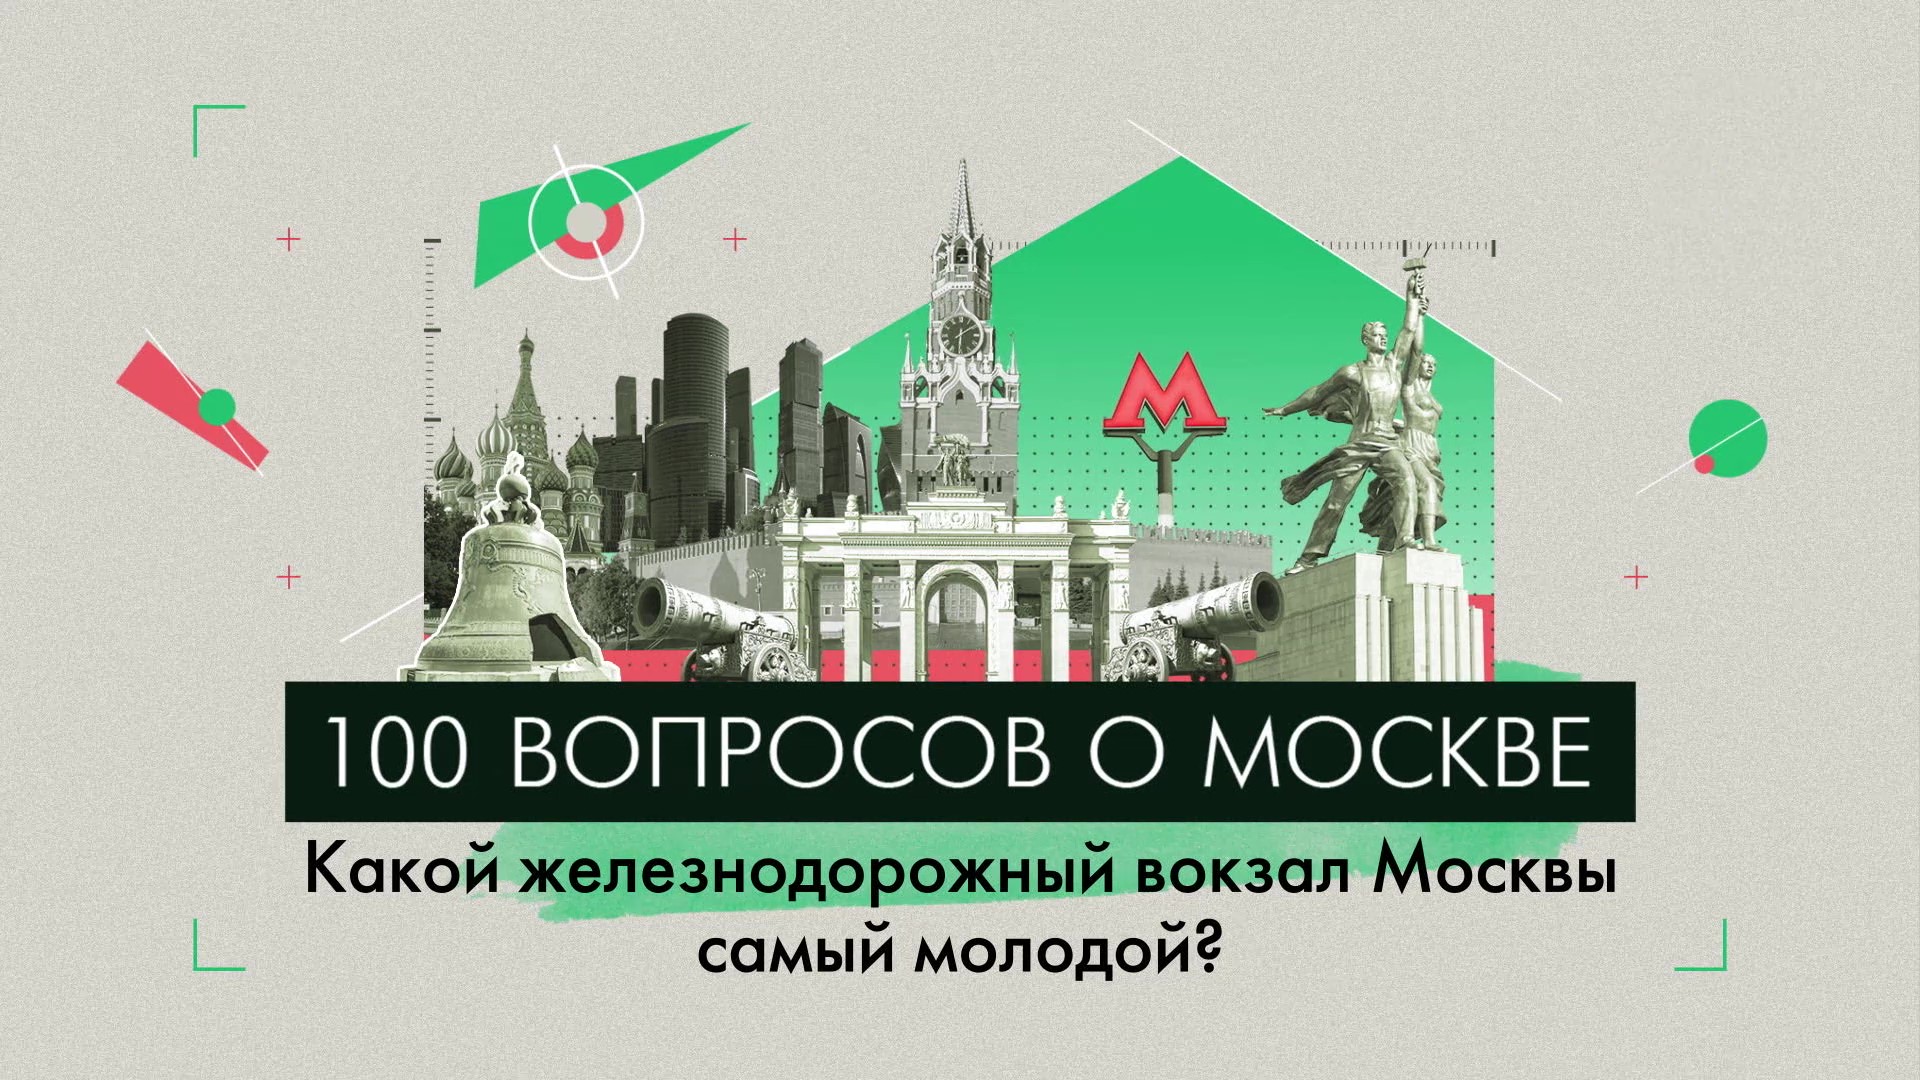 100 вопросов о Москве: какой железнодорожный вокзал Москвы самый молодой?